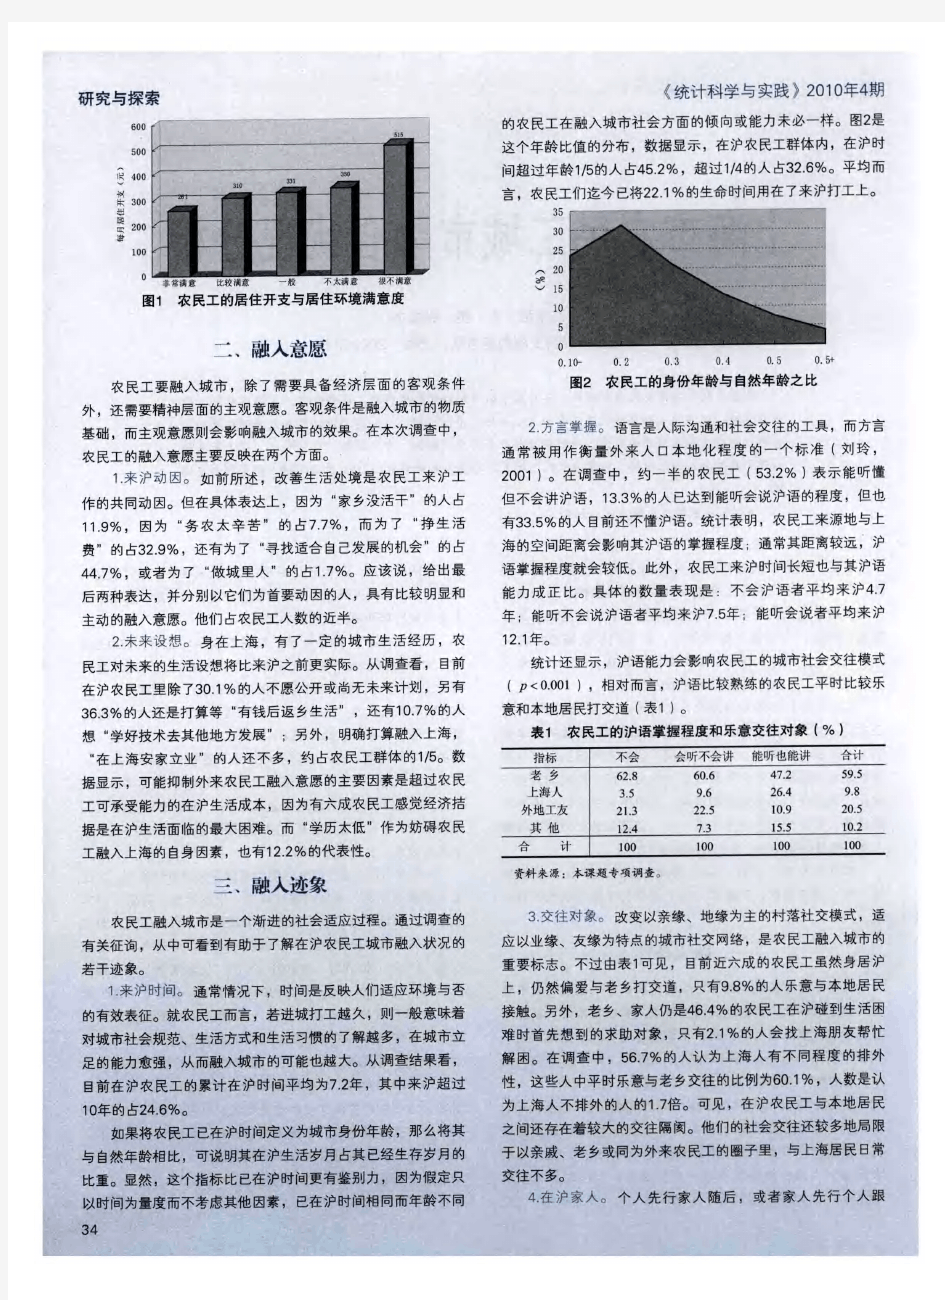 上海市农民工城市融合状况分析